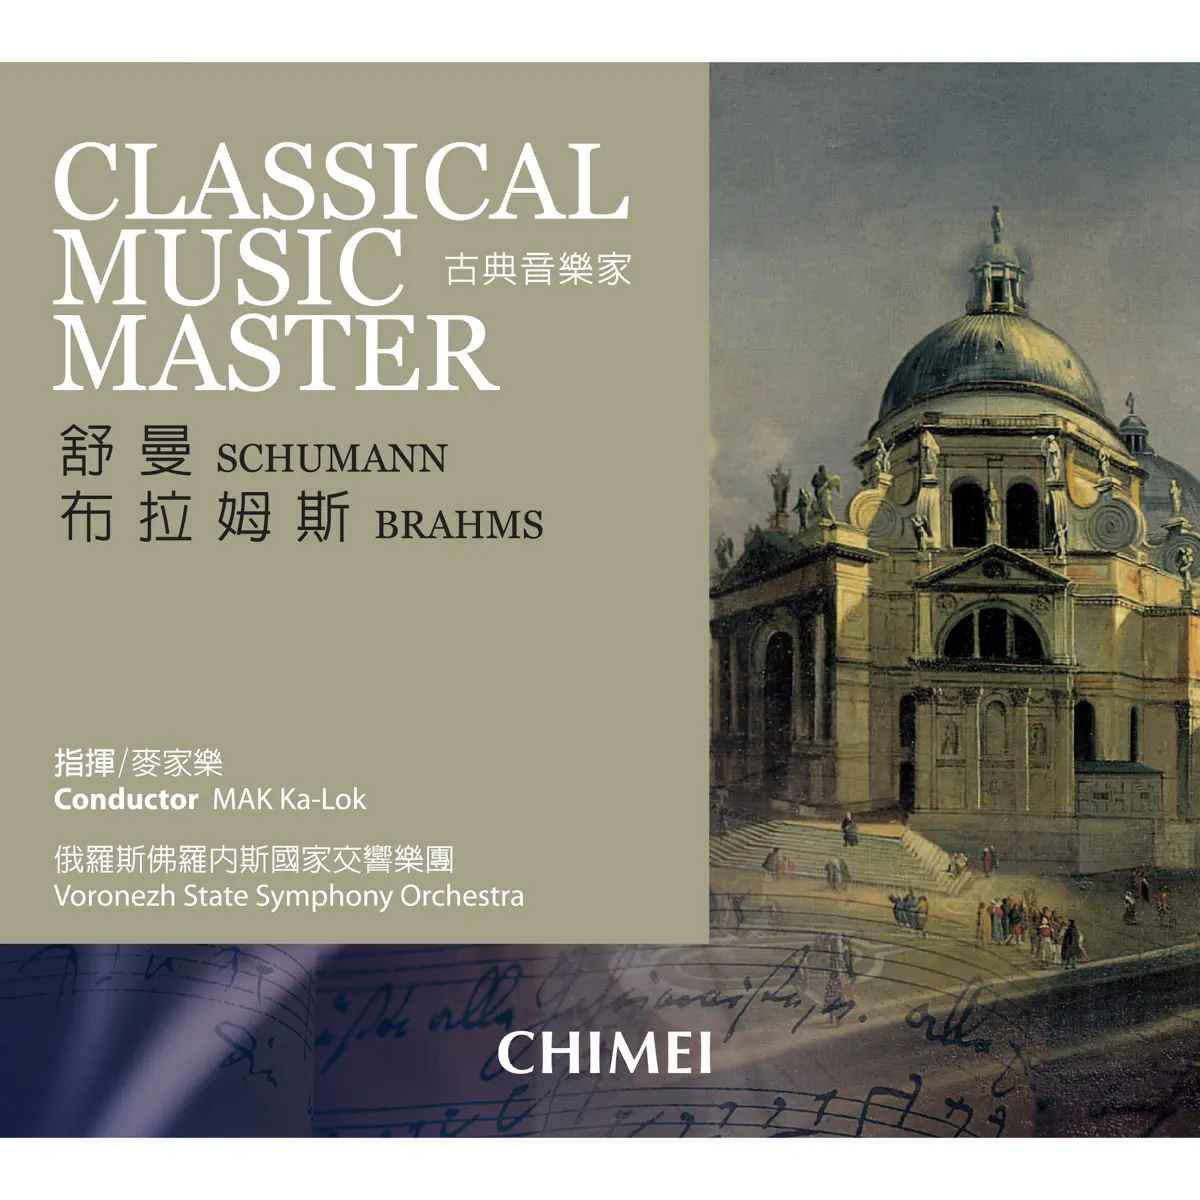 麥家樂 & 俄羅斯佛羅內斯國家交響樂團 - 古典音樂家: 舒曼 & 布拉姆斯 Classical Music Master: Schumann & Brahms (2007) [iTunes Plus AAC M4A]-新房子